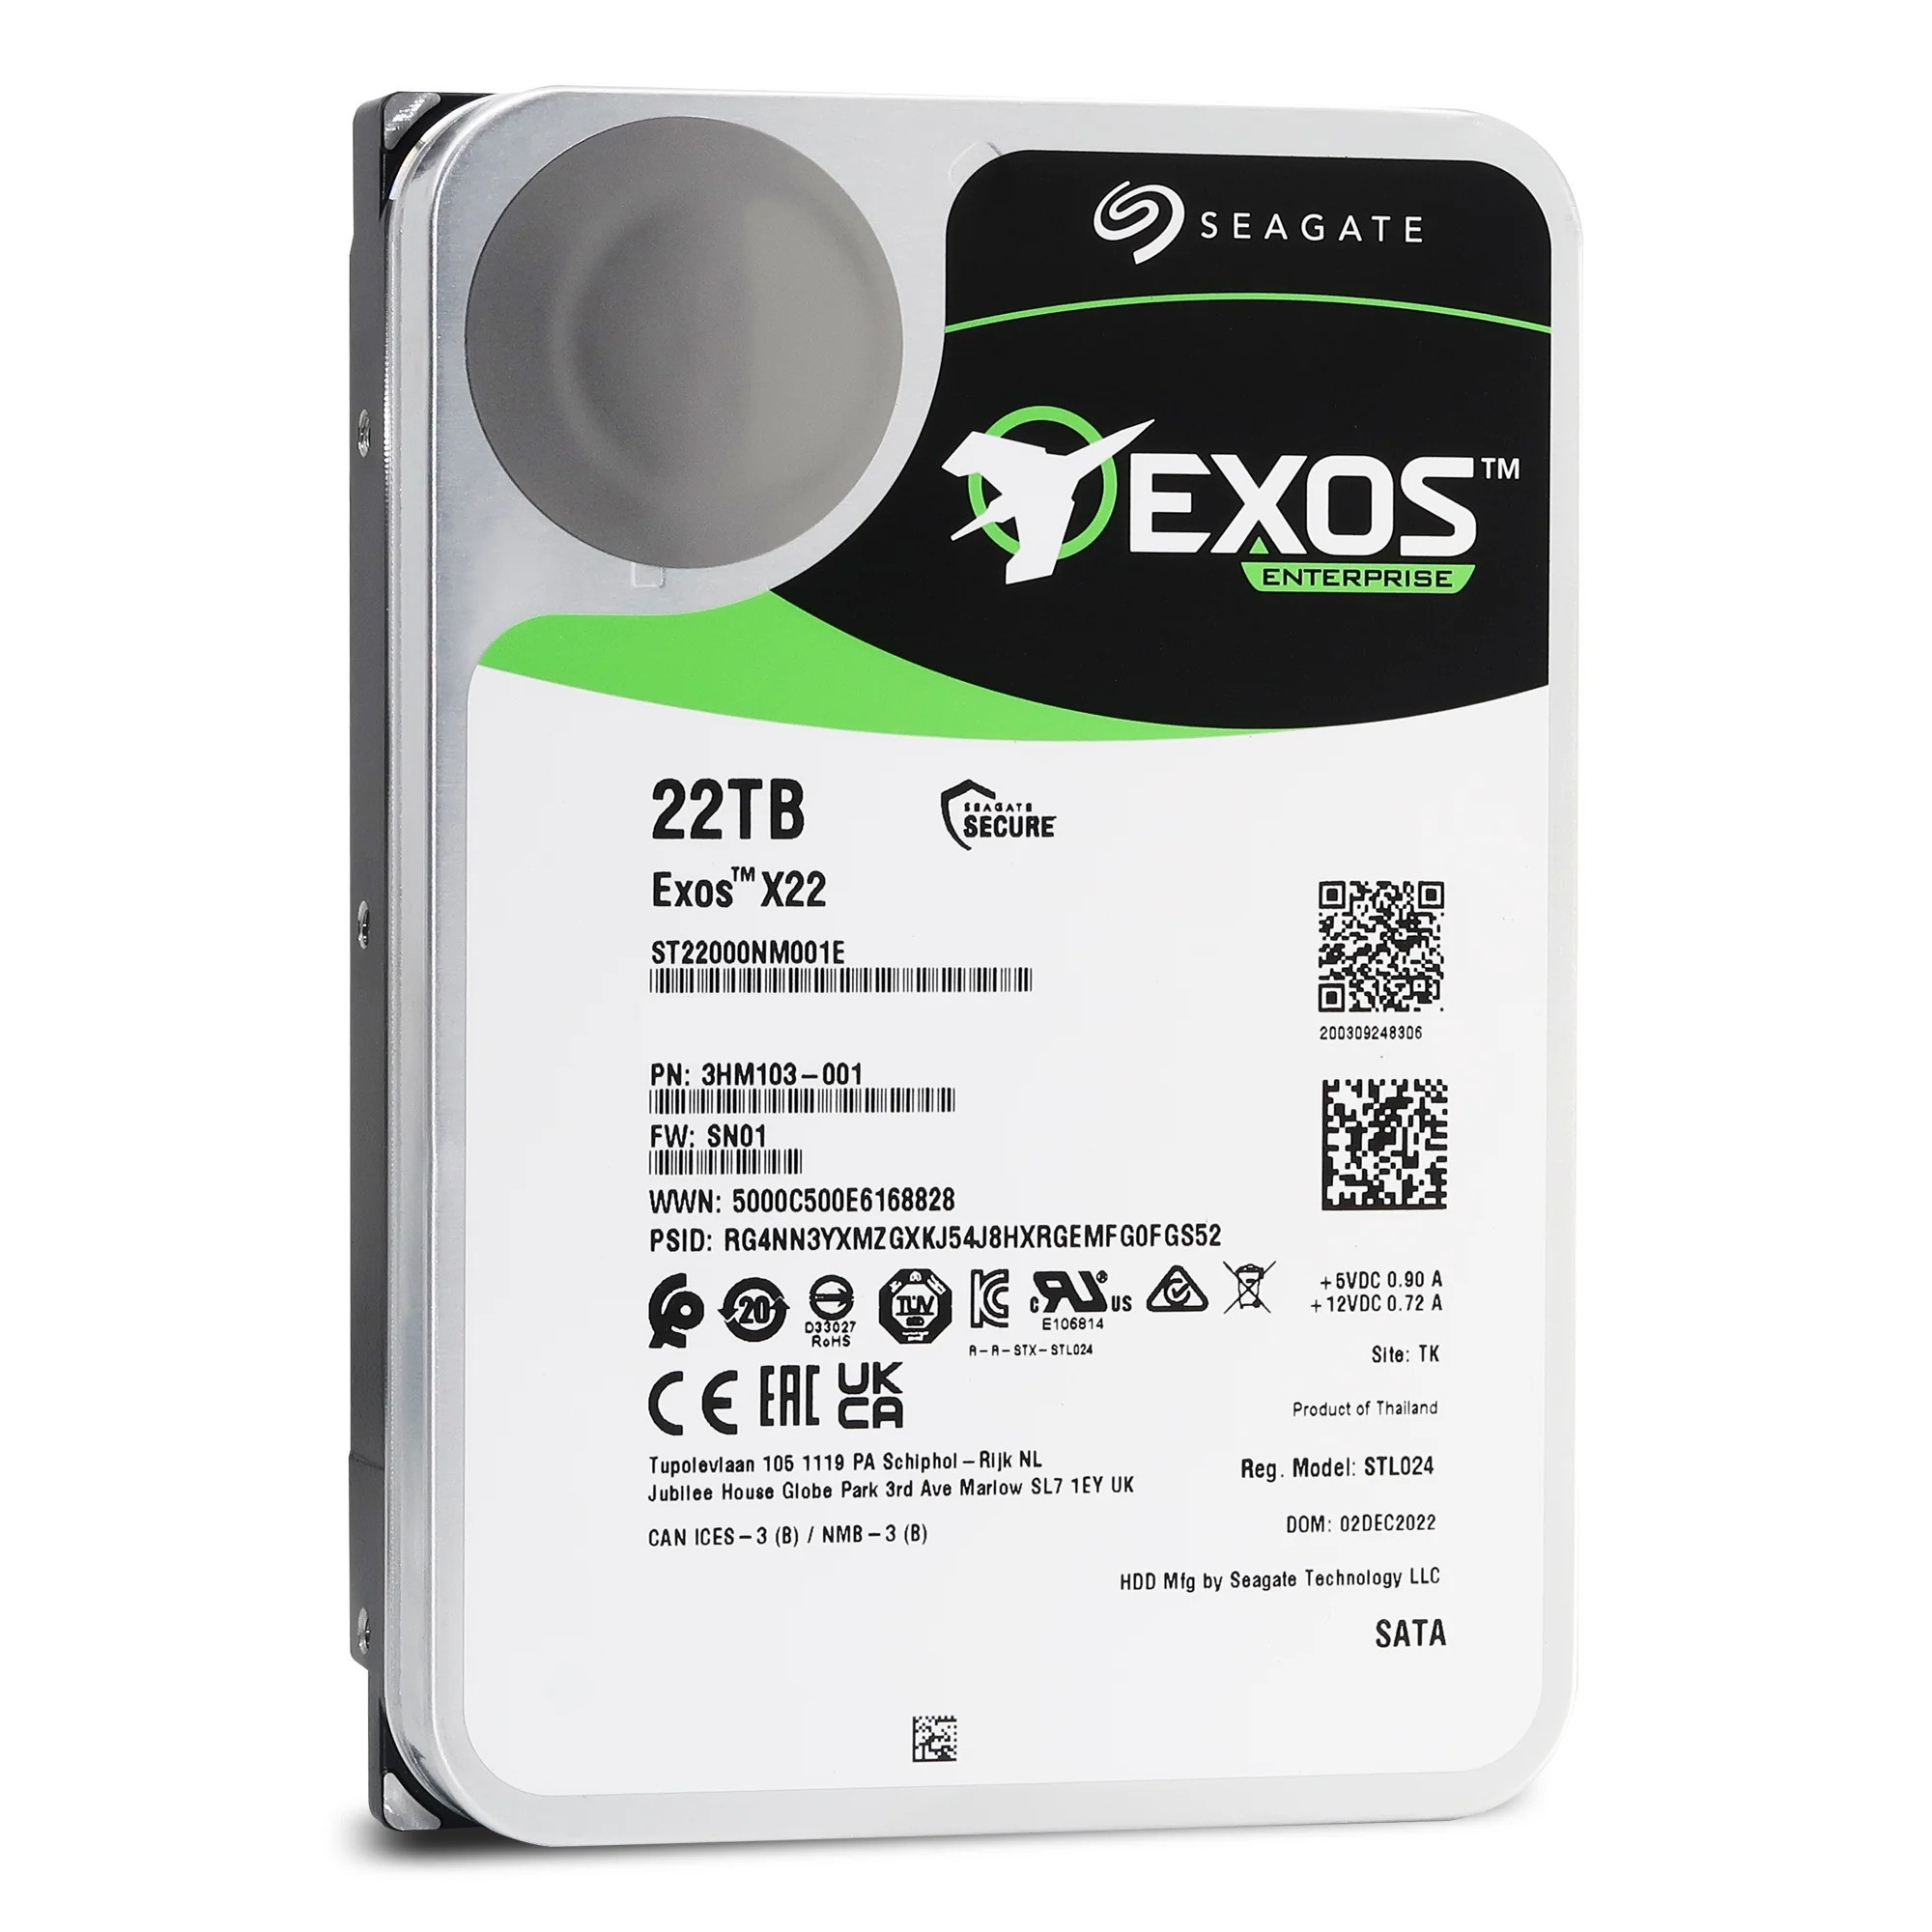 SEAGATE EXOS X22 22TB 7200RPM 512MB SATA3 ST22000NM001E NAS HDD